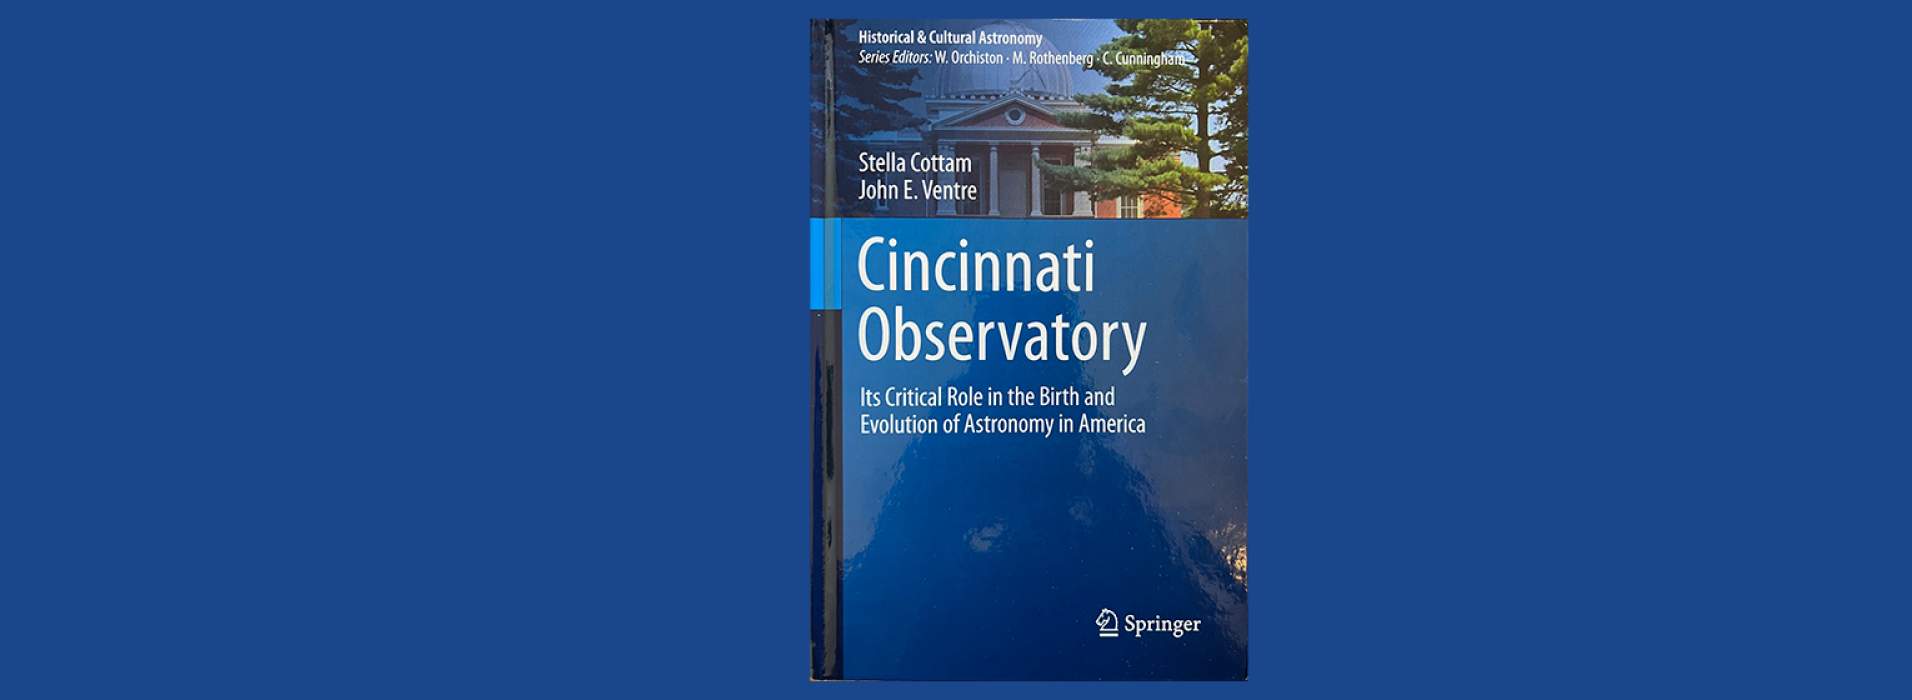 Cincinnati Observatory by Stella Cottam and John E. Ventre